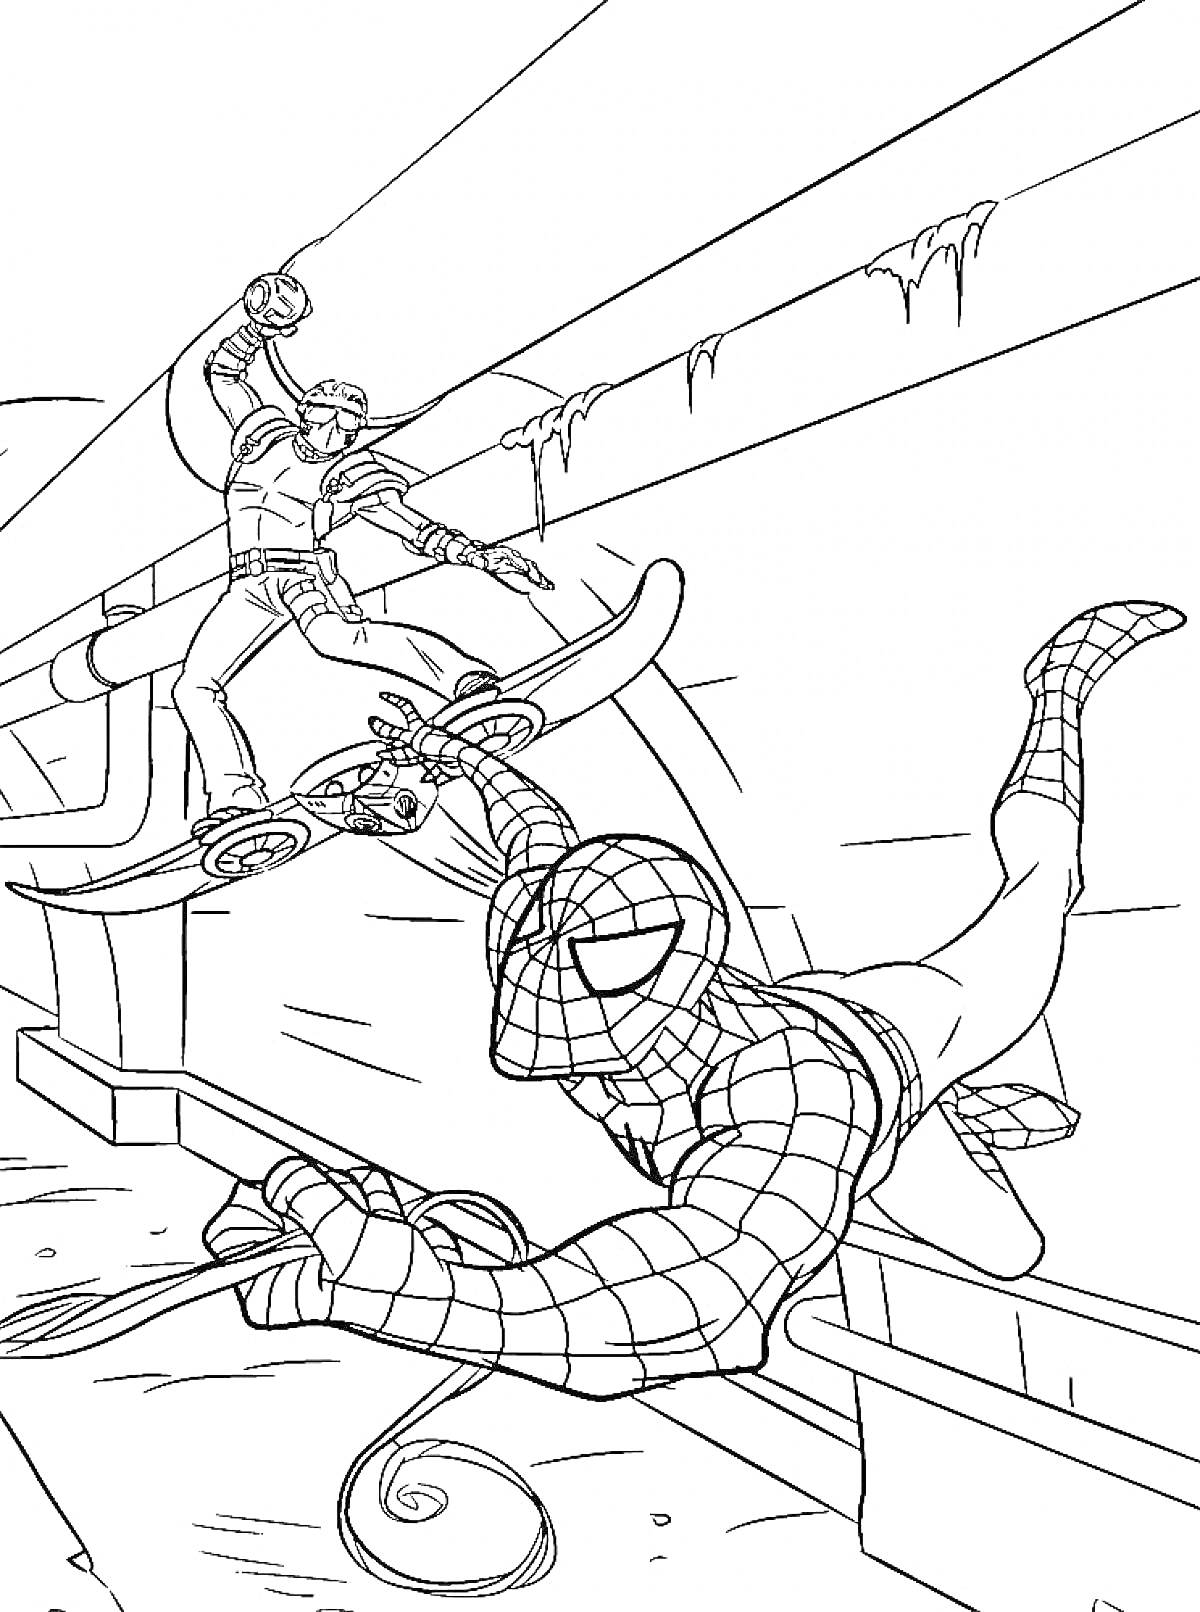 Раскраска Человек-Паук сражается с противником на летающей платформе в подземелье